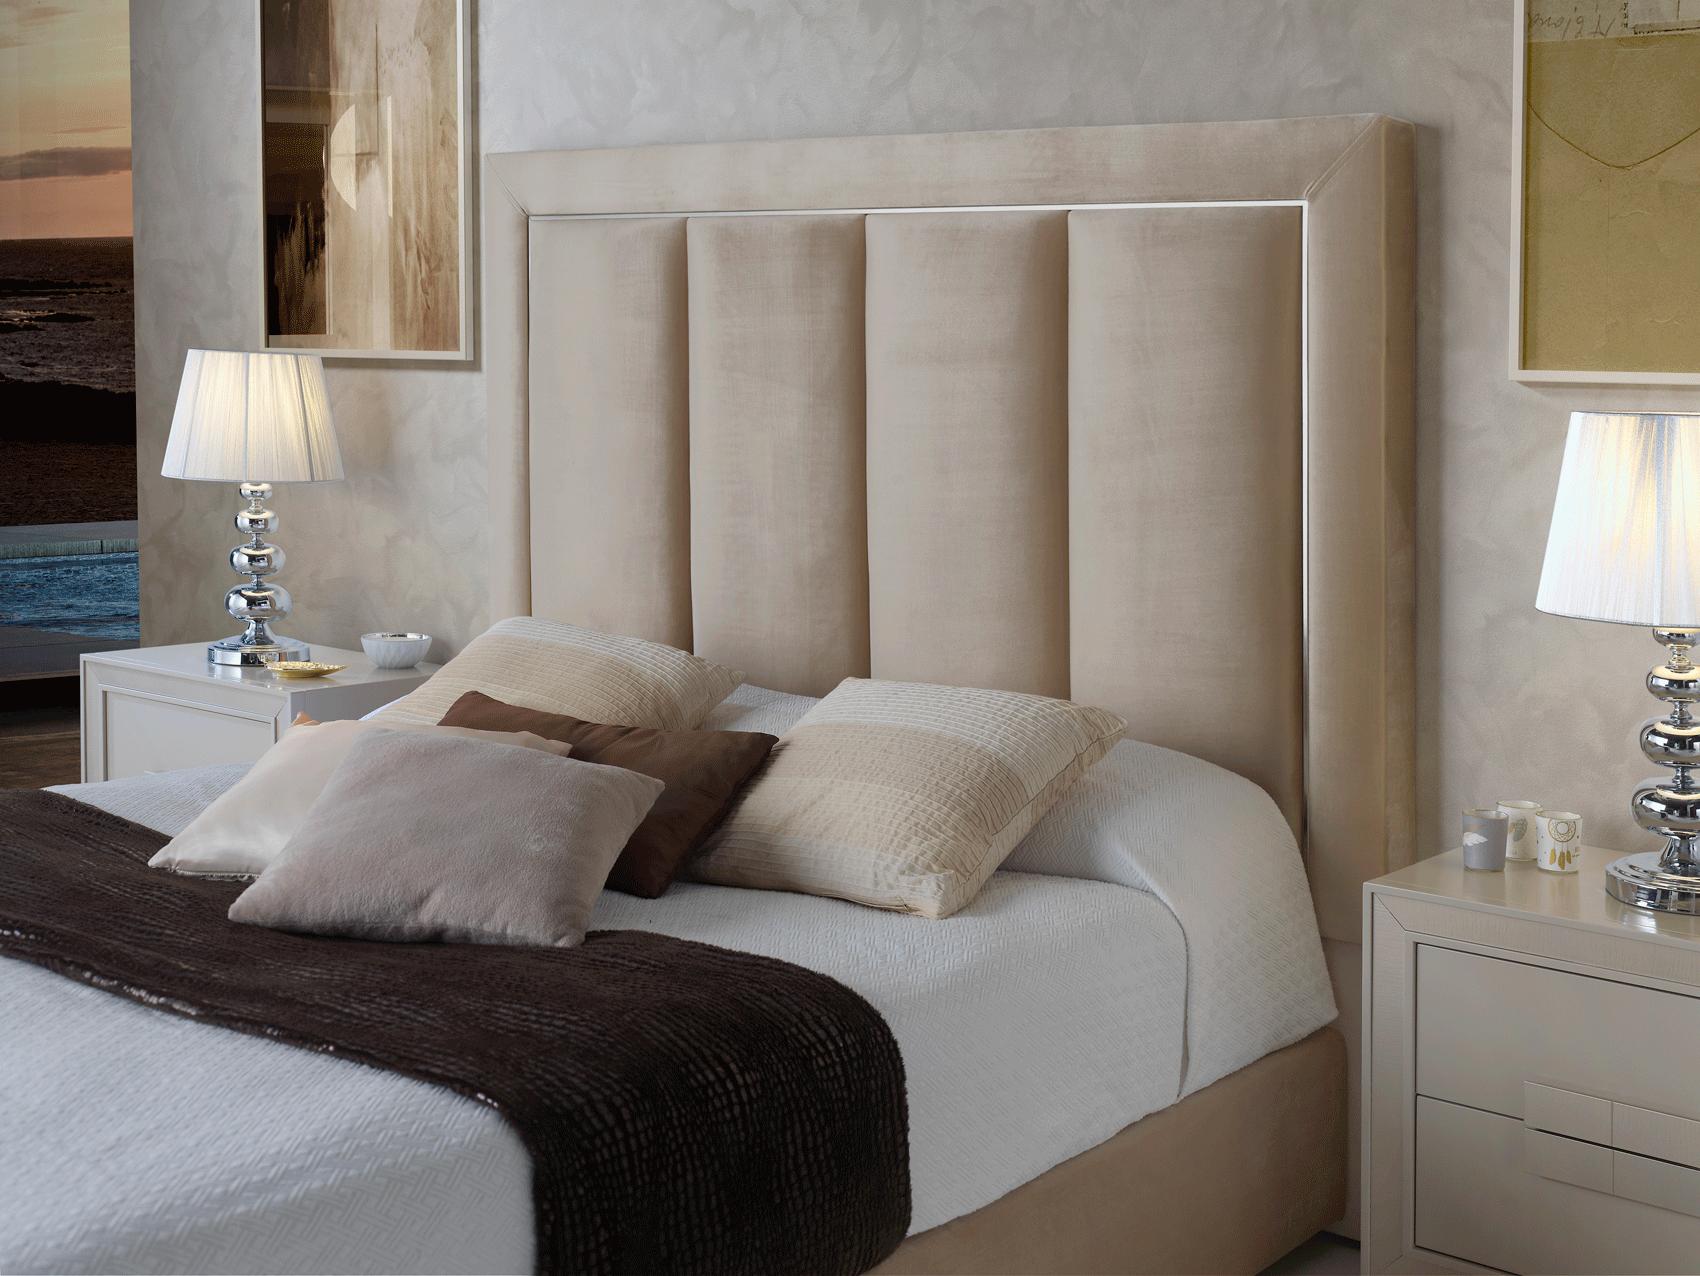 

    
Premium Beige Microfiber Upholstery Queen Bedroom Set 3Pcs Made in Spain ESF Monica
